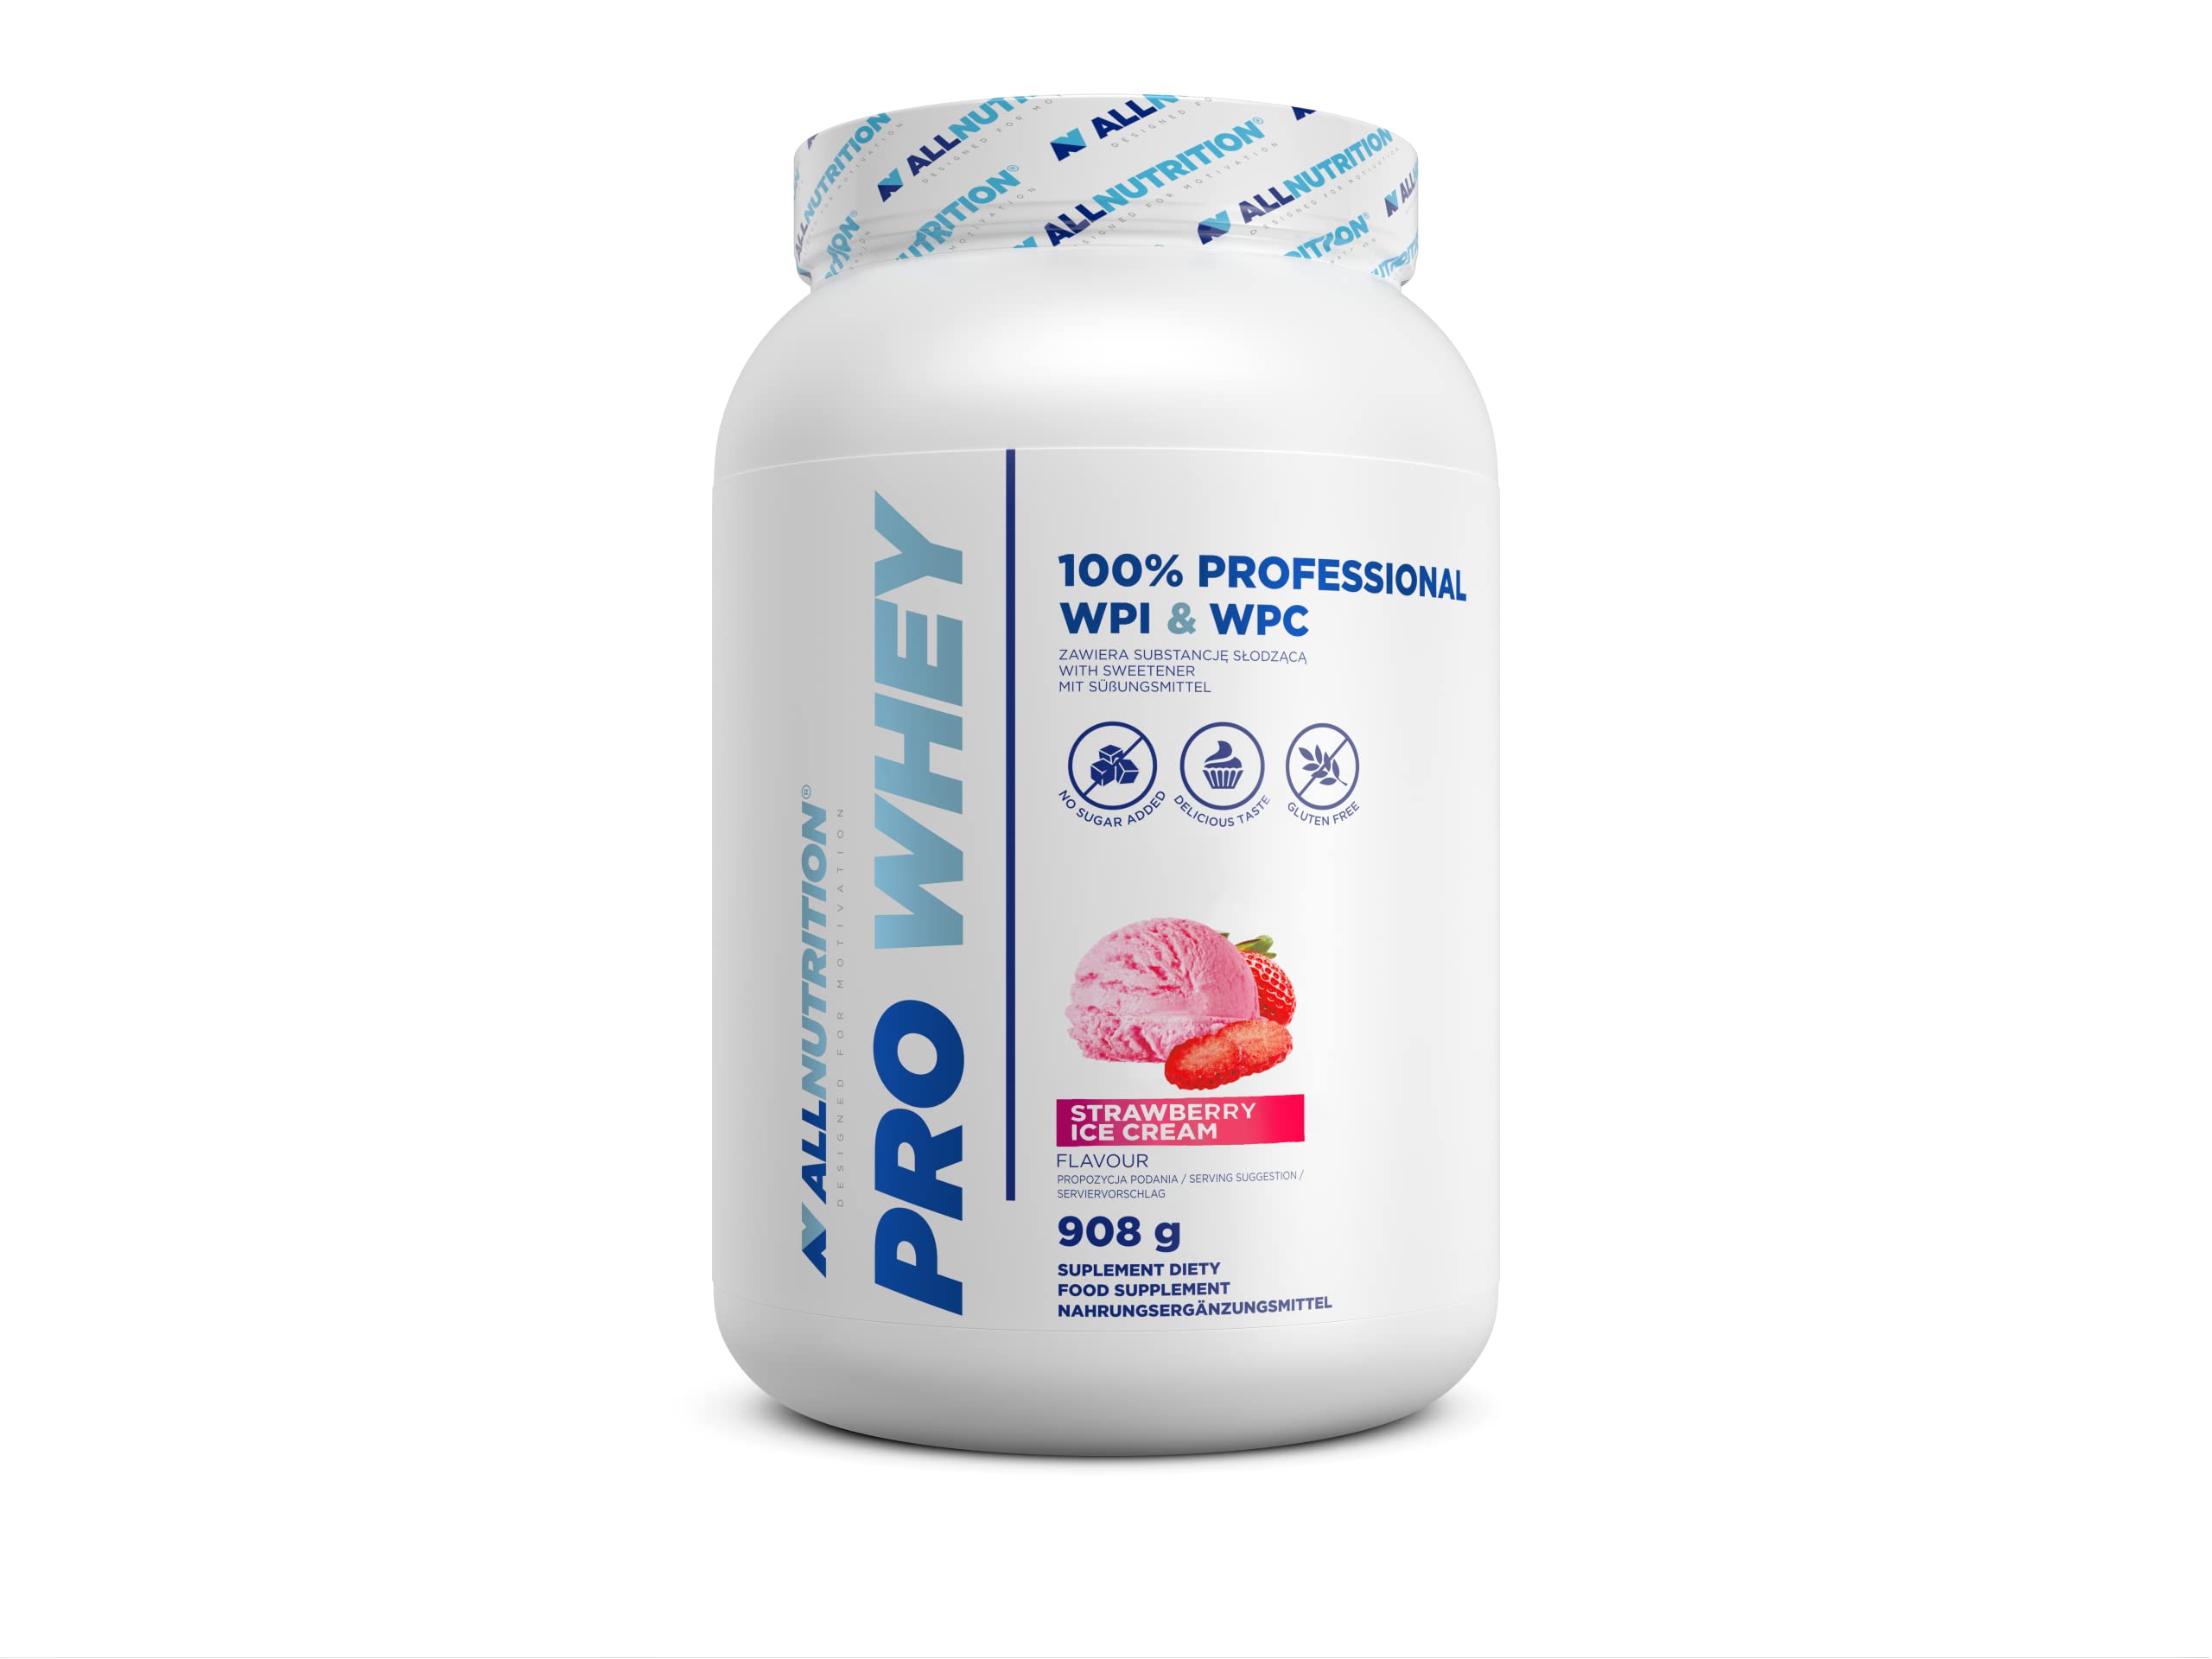 ALLNUTRITION Pro Whey Protein Powder mit Verzweigten Aminosäuren - Molkenprotein-Konzentrat & Molkenprotein-Isolat - Pre-Workout-Pulver - Kalorienarmes Proteinpulver - 908g - Erdbeer-Eiscreme